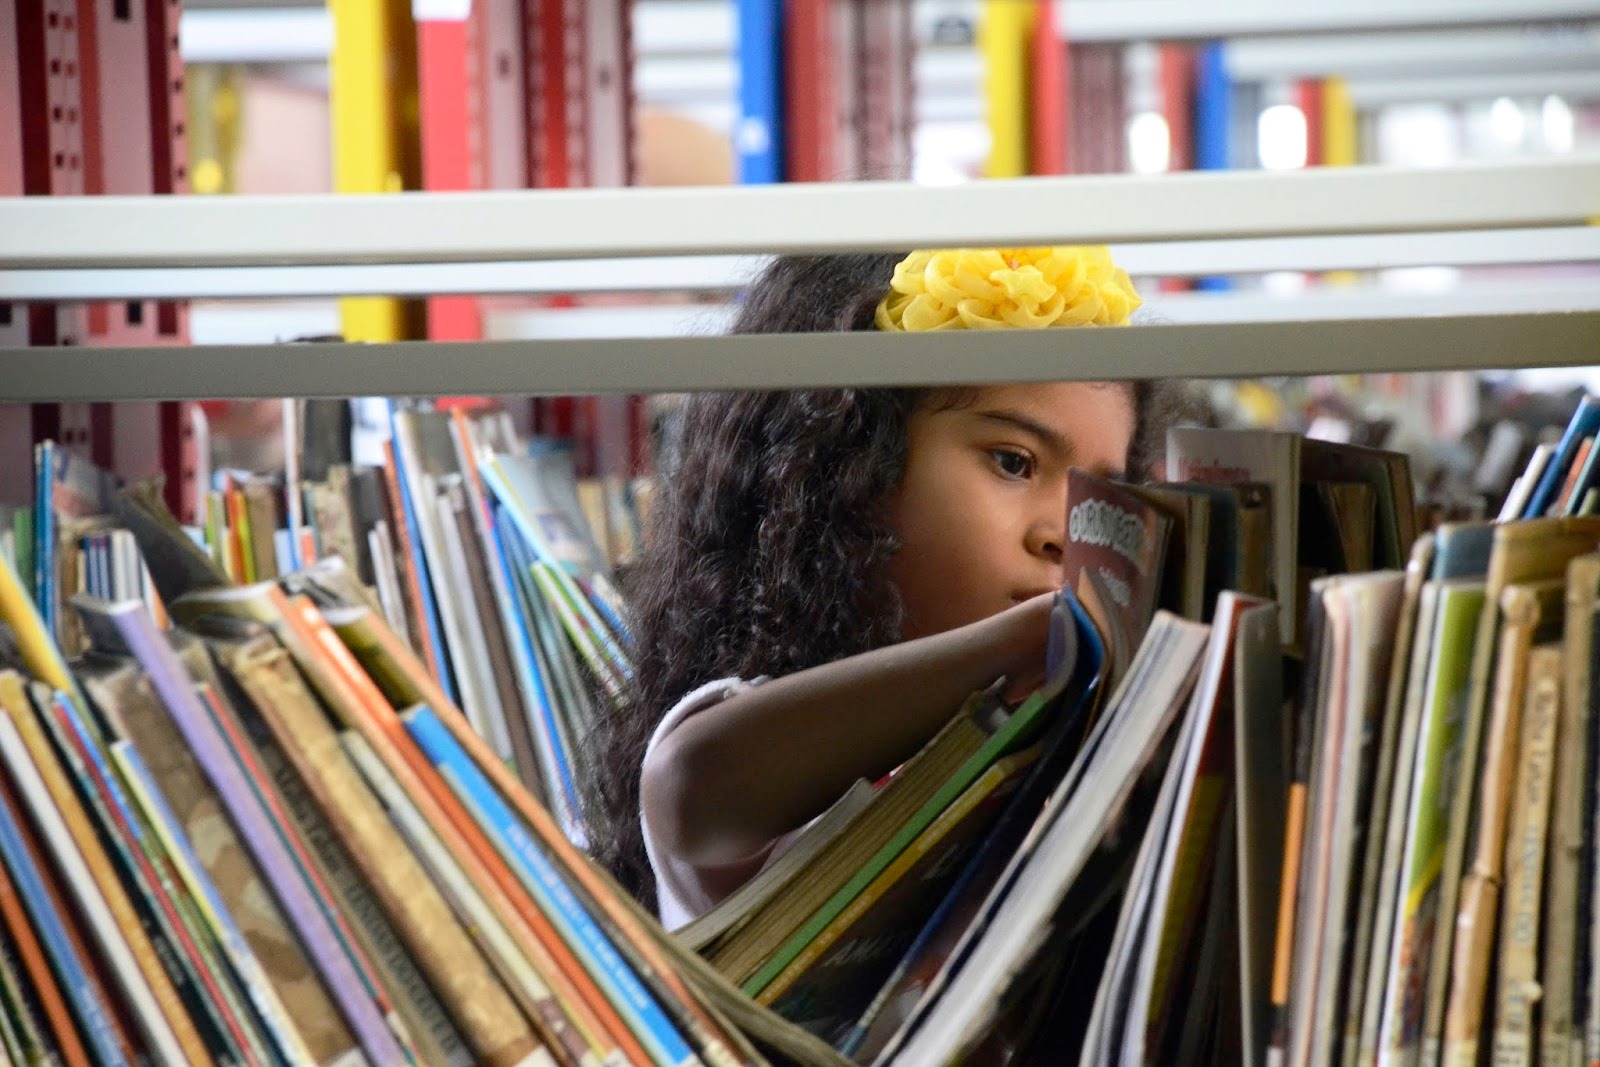 Biblioteca Estadual Câmara Cascudo é reaberta depois de 9 anos com acervo digital e espaço infantil